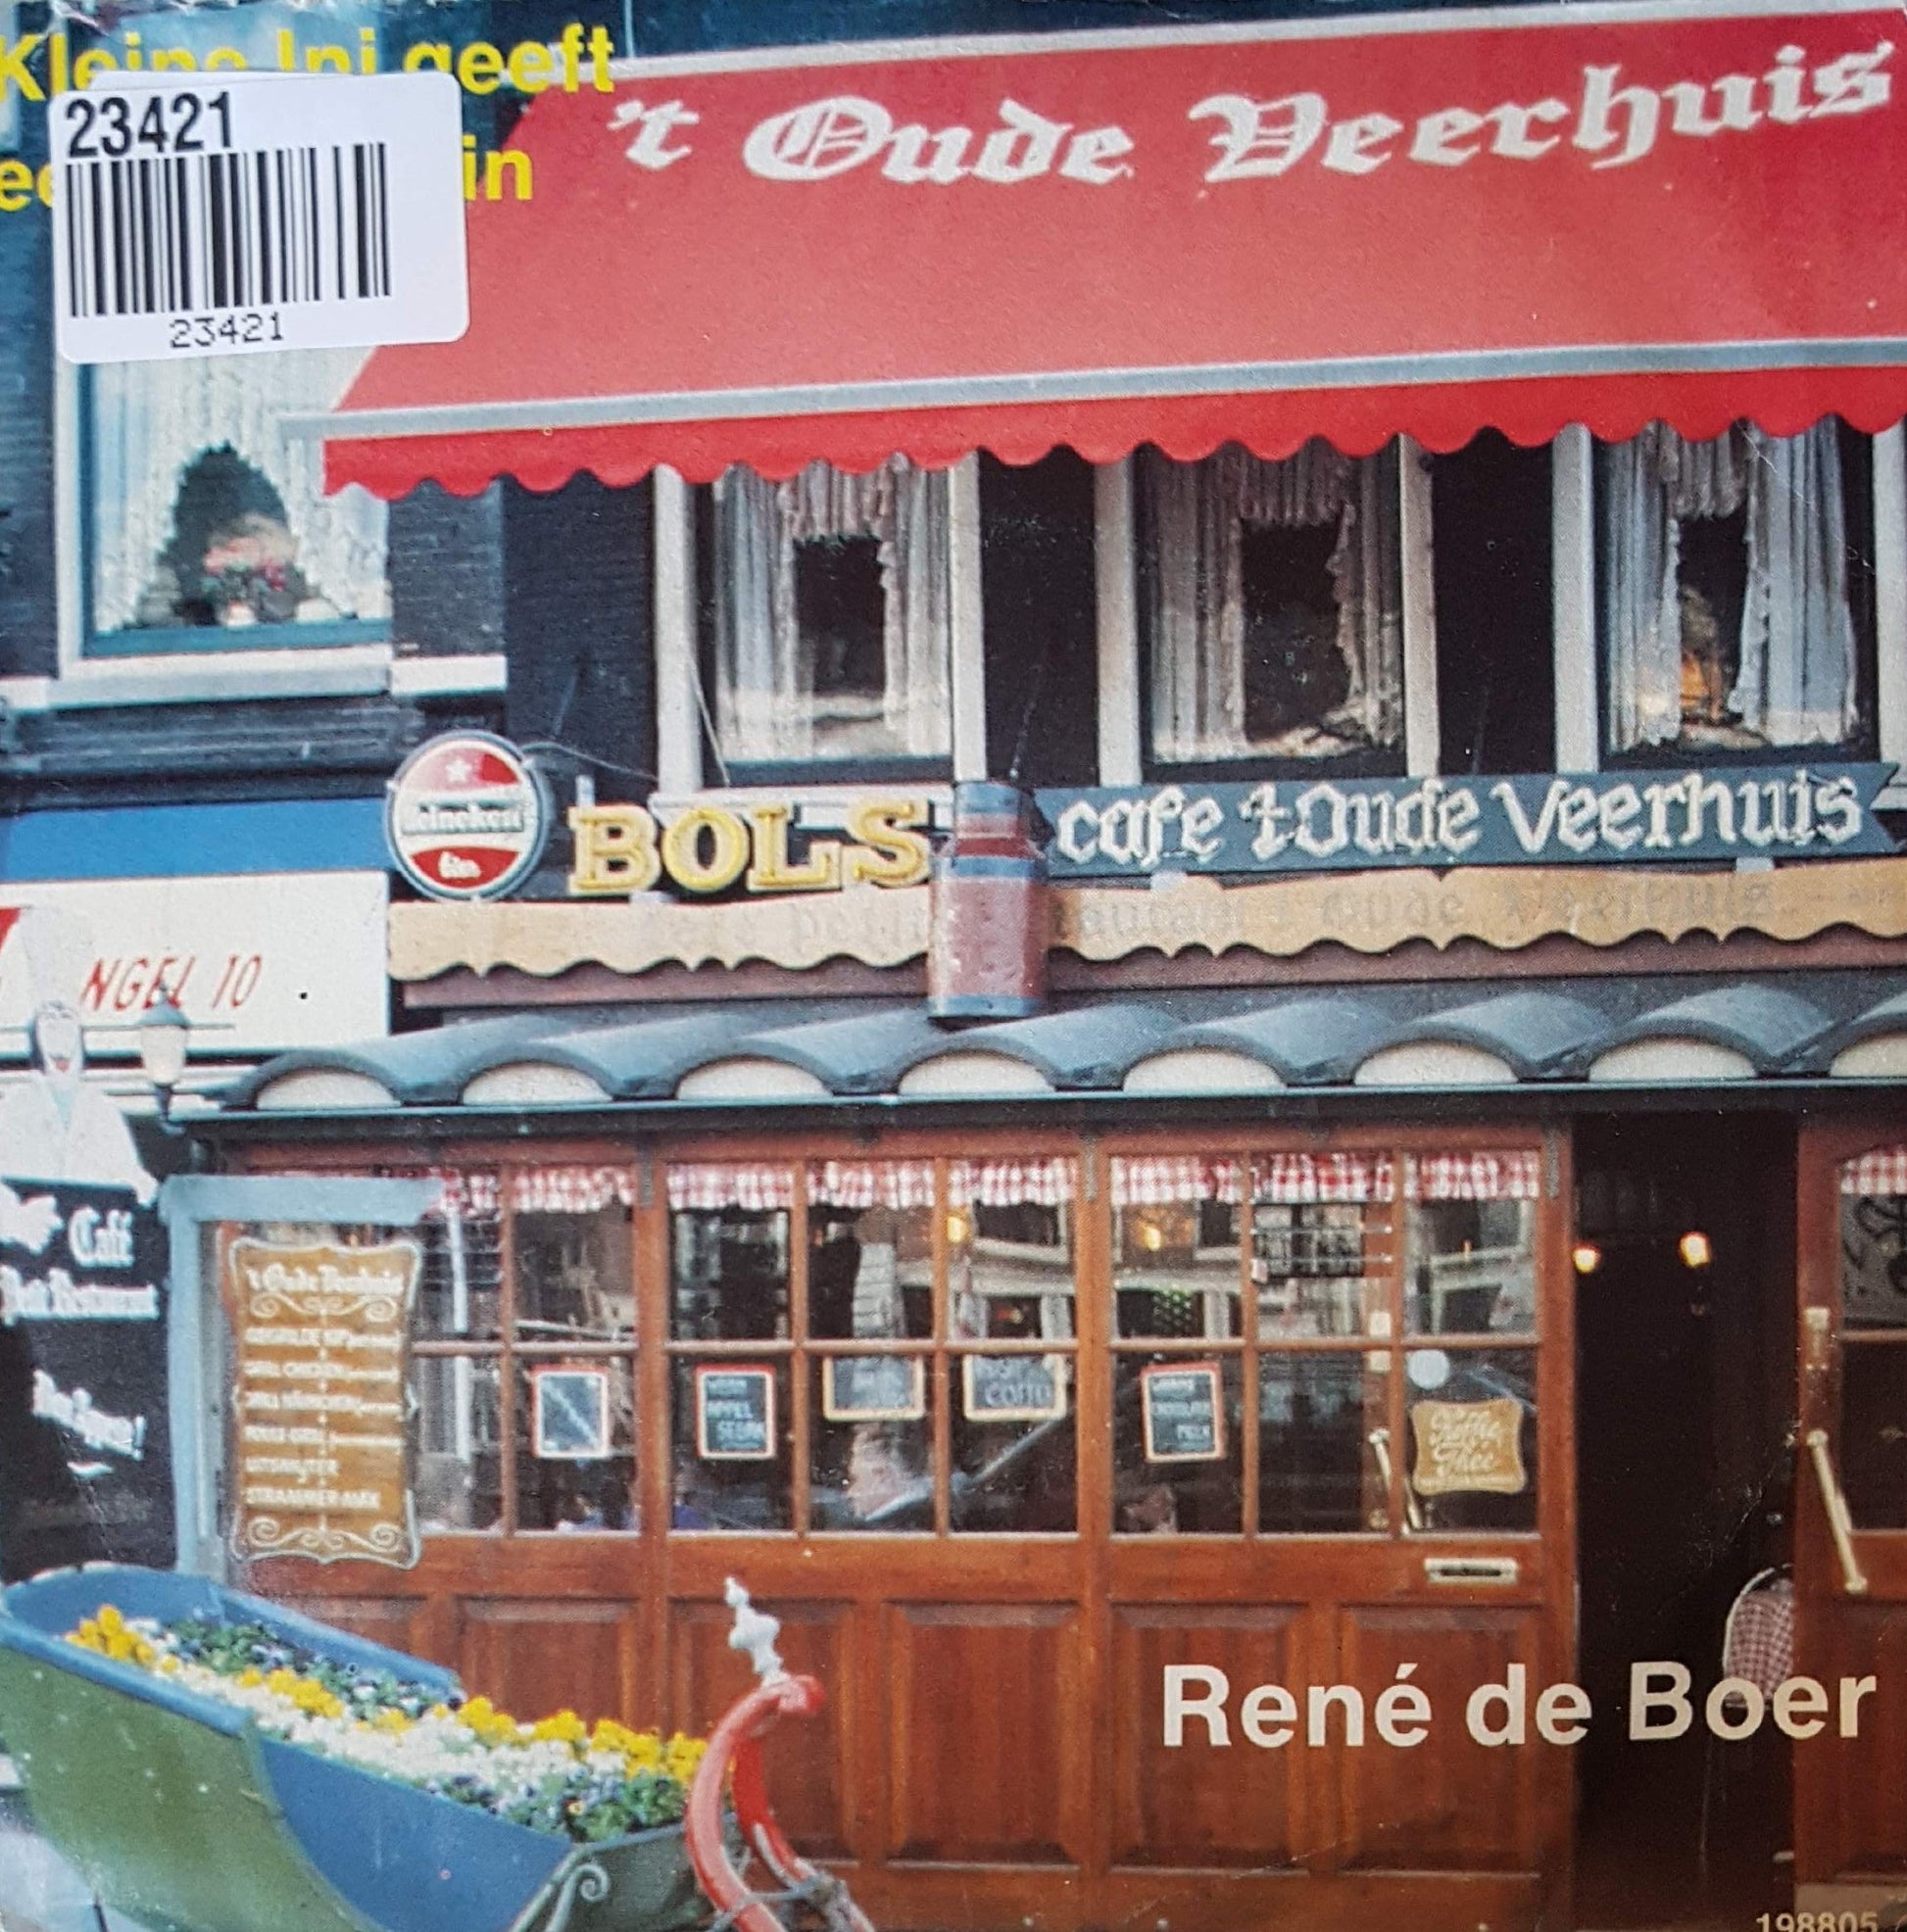 Rene de Boer - Kleine Ini Geeft Een Feestje In 't Oude Veerhuis 23421 Vinyl Singles VINYLSINGLES.NL